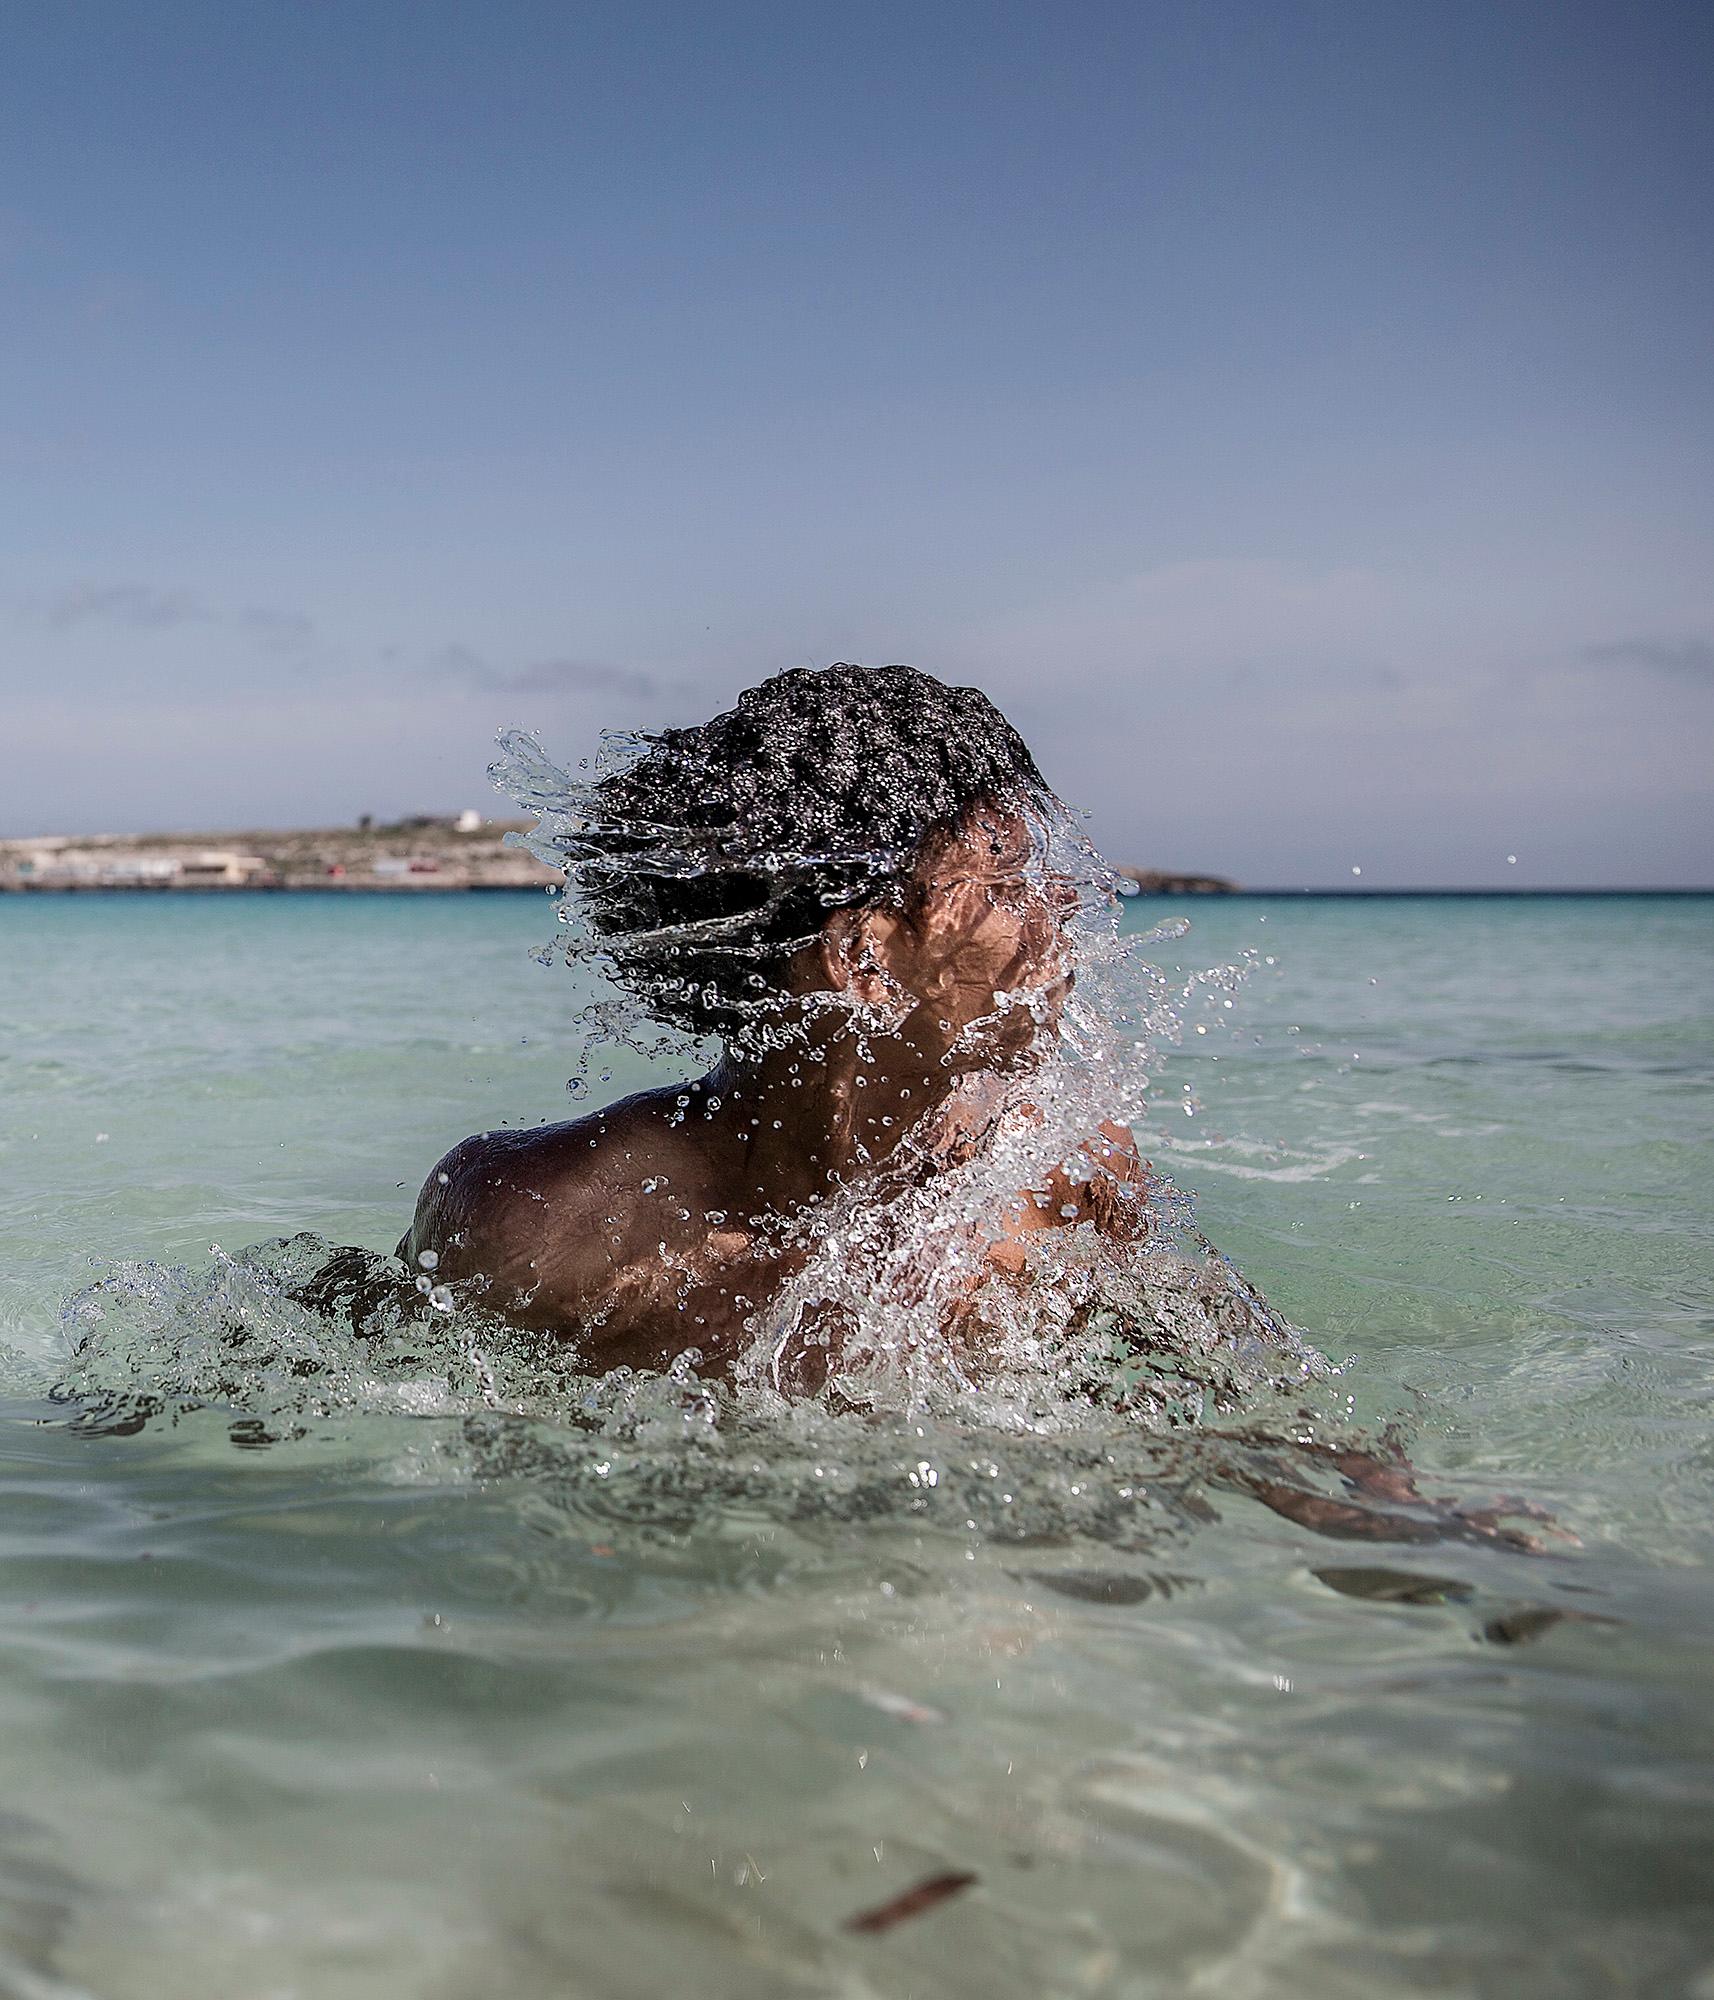 Lampedusa, ön som ligger mitt i medelhavet och blivit en av de första anhalterna för båtflyktingar.  Robel, Nohom, Meron, Anbesa, Amanuel från Eritrea badar i det kristallblåa vattnet på en av lampedusas stränder. Under dagarna har de möjlighet att lämna det inhägnade lägret de bor i.